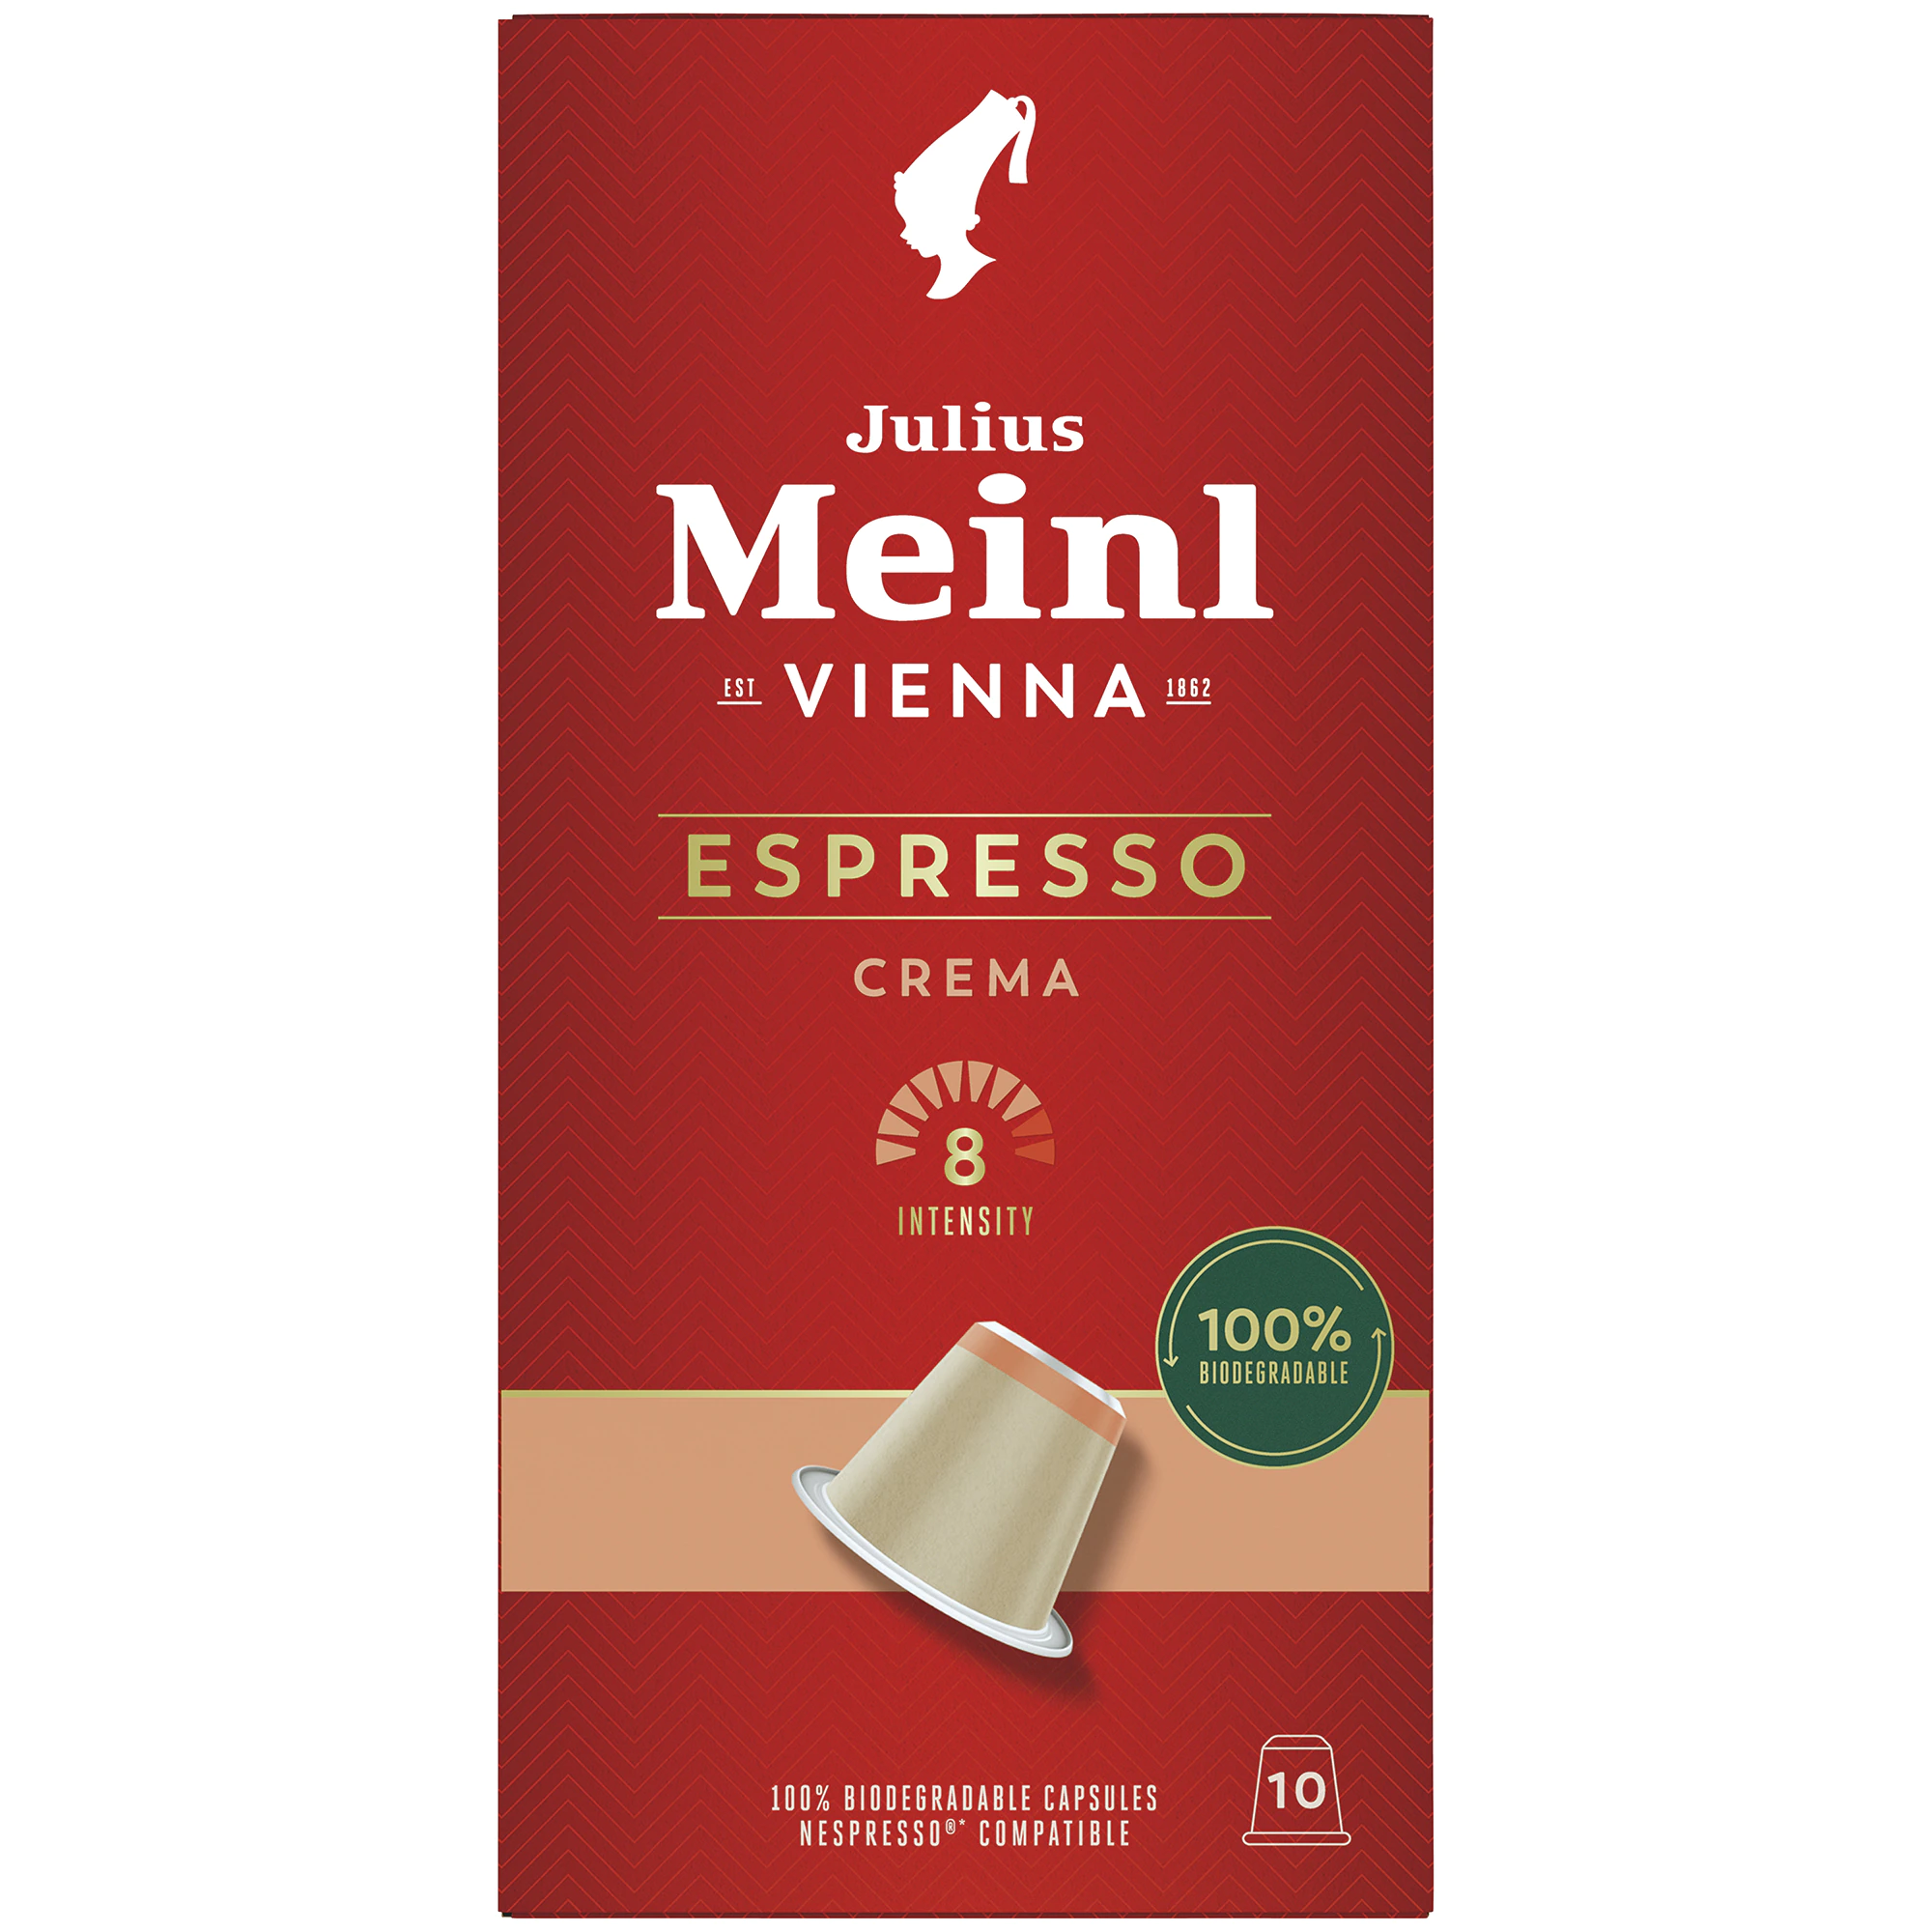 julius meinl espresso crema 10 capsule nespresso kfea 315663d11514bdb3a Julius Meinl Cafea